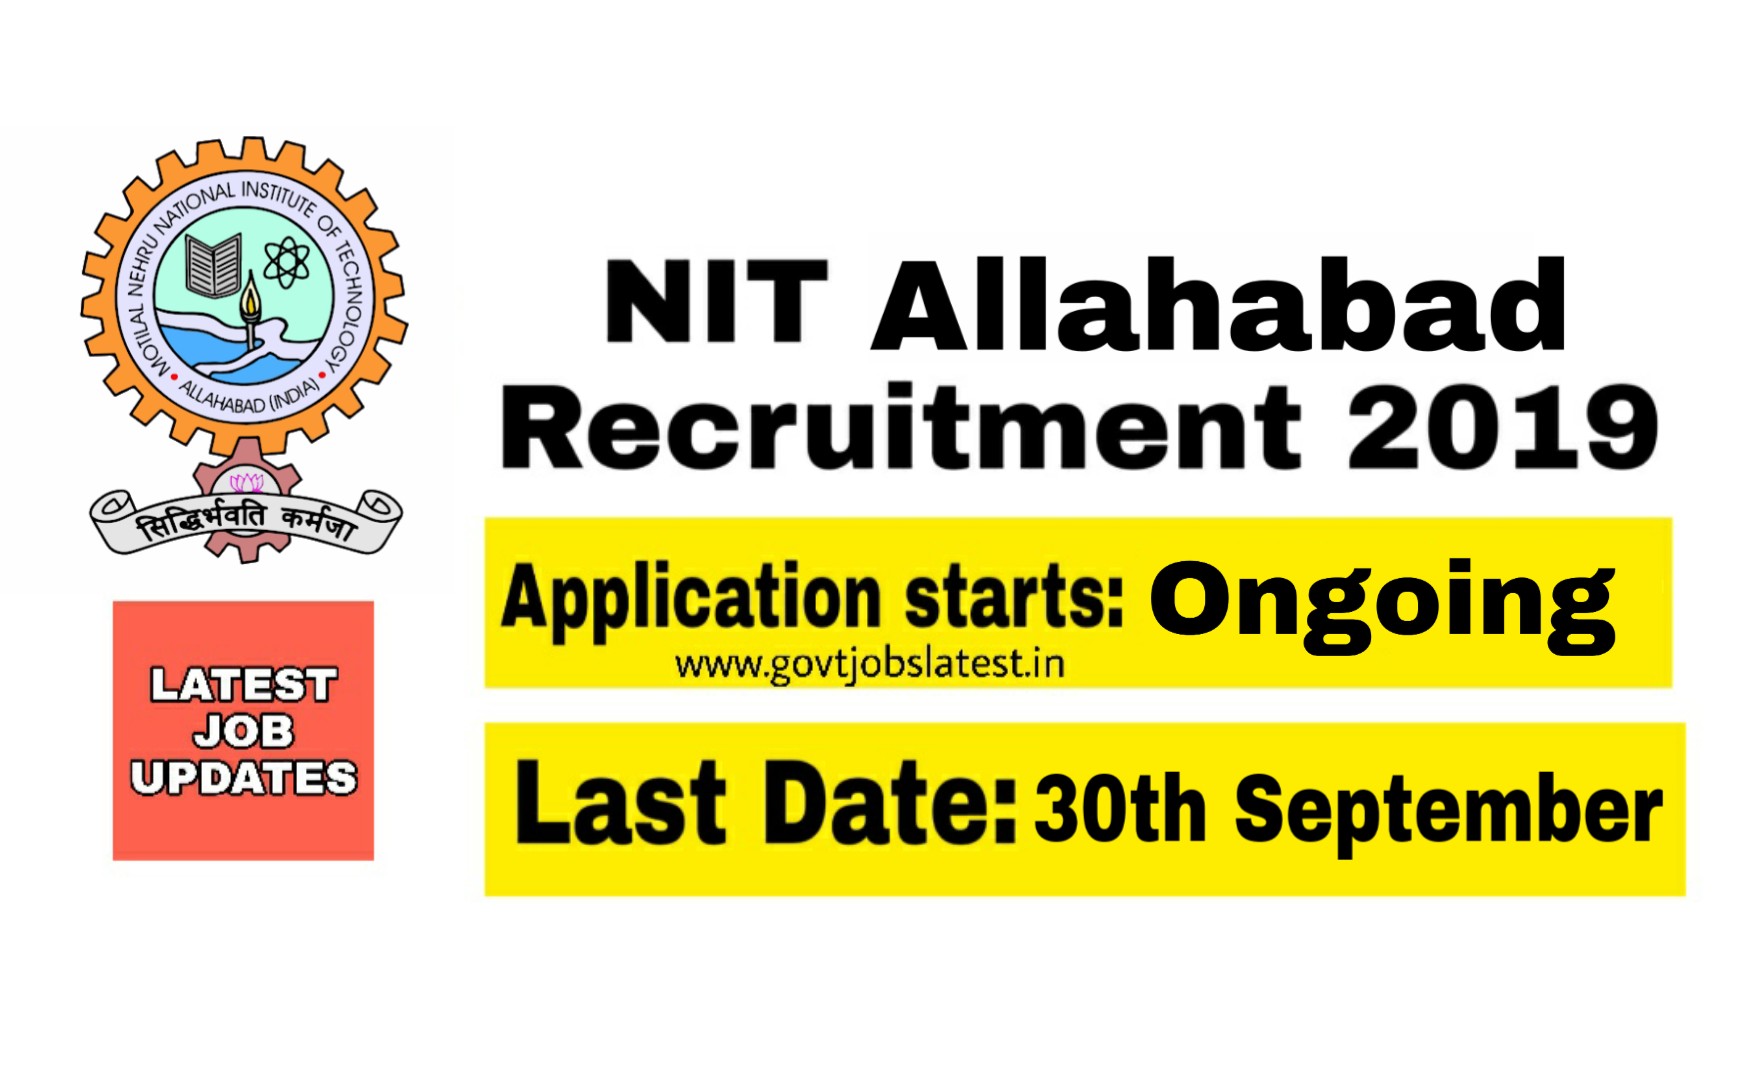 NIT Allahabad Recruitment - Technical posts vacancies 2019